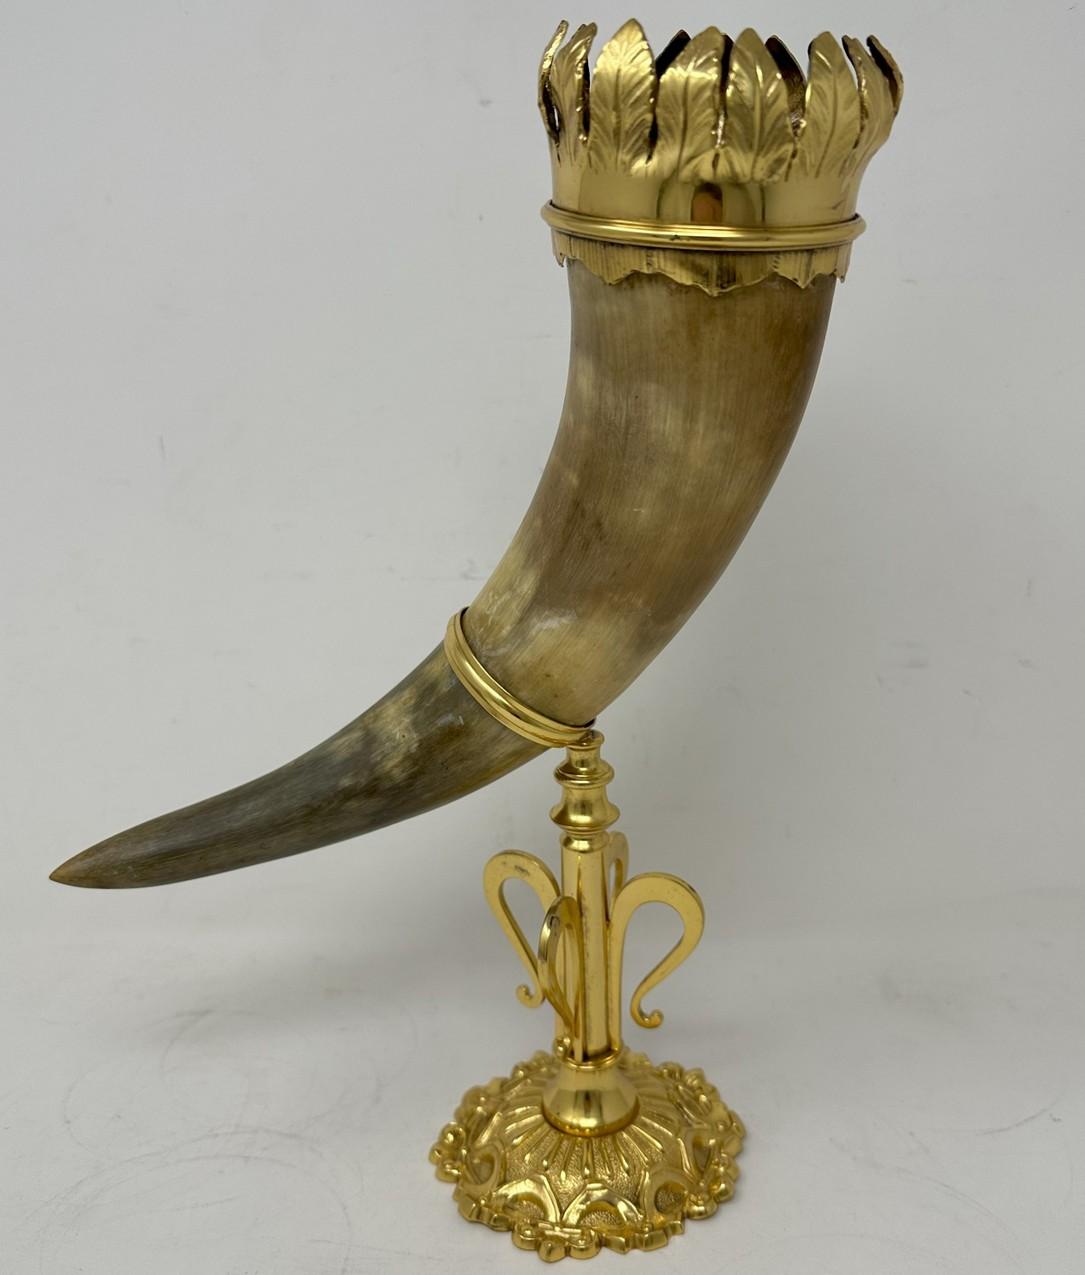 Ein hervorragendes Beispiel für eine deutsche Kuh Horn of plenty Füllhorn   

dekorative Vase oder Tafelaufsatz, die der weltberühmten Württembergischen Metallwarenfabrik, kurz WMF genannt, zugeschrieben wird.  Um 1900. 

Das ungewöhnlich große Horn